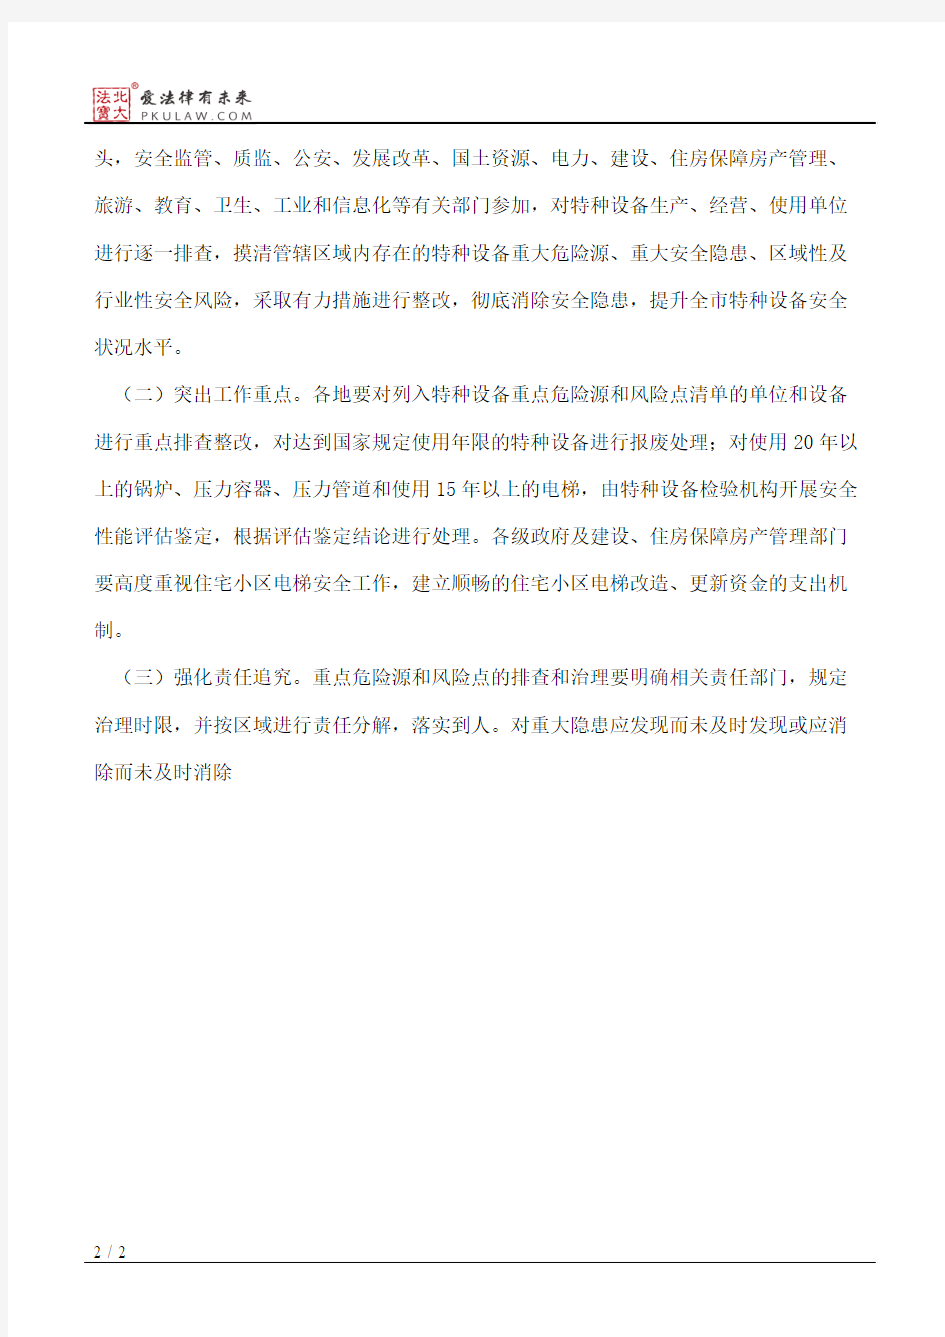 邯郸市人民政府办公厅关于加强特种设备安全工作的通知